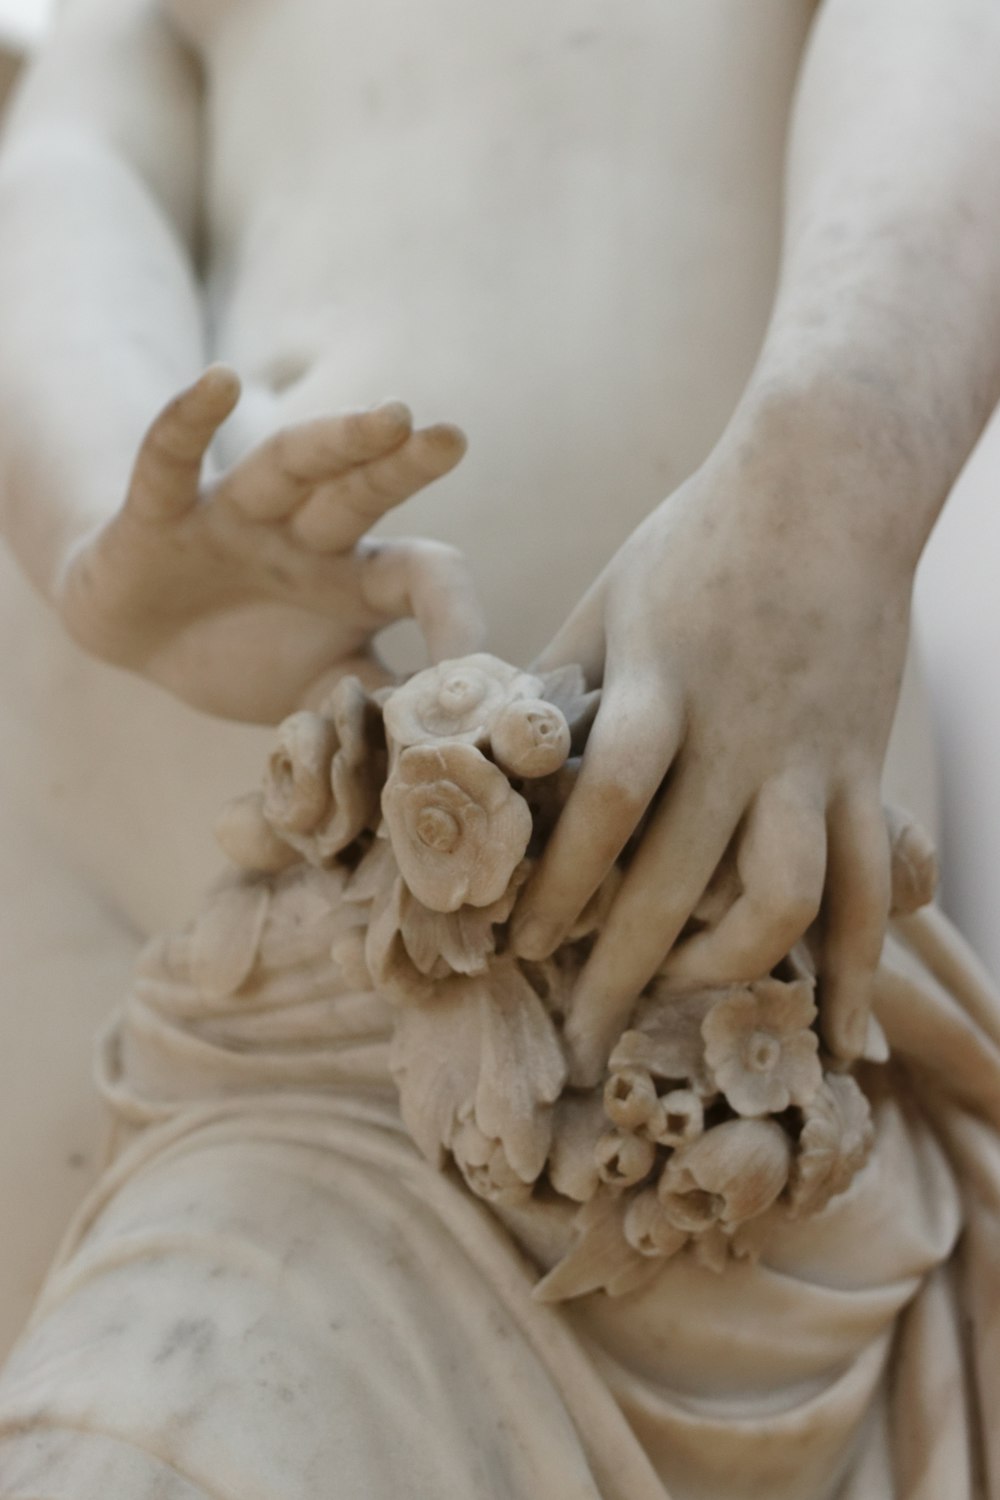 persona sosteniendo la figura de cerámica del ángel